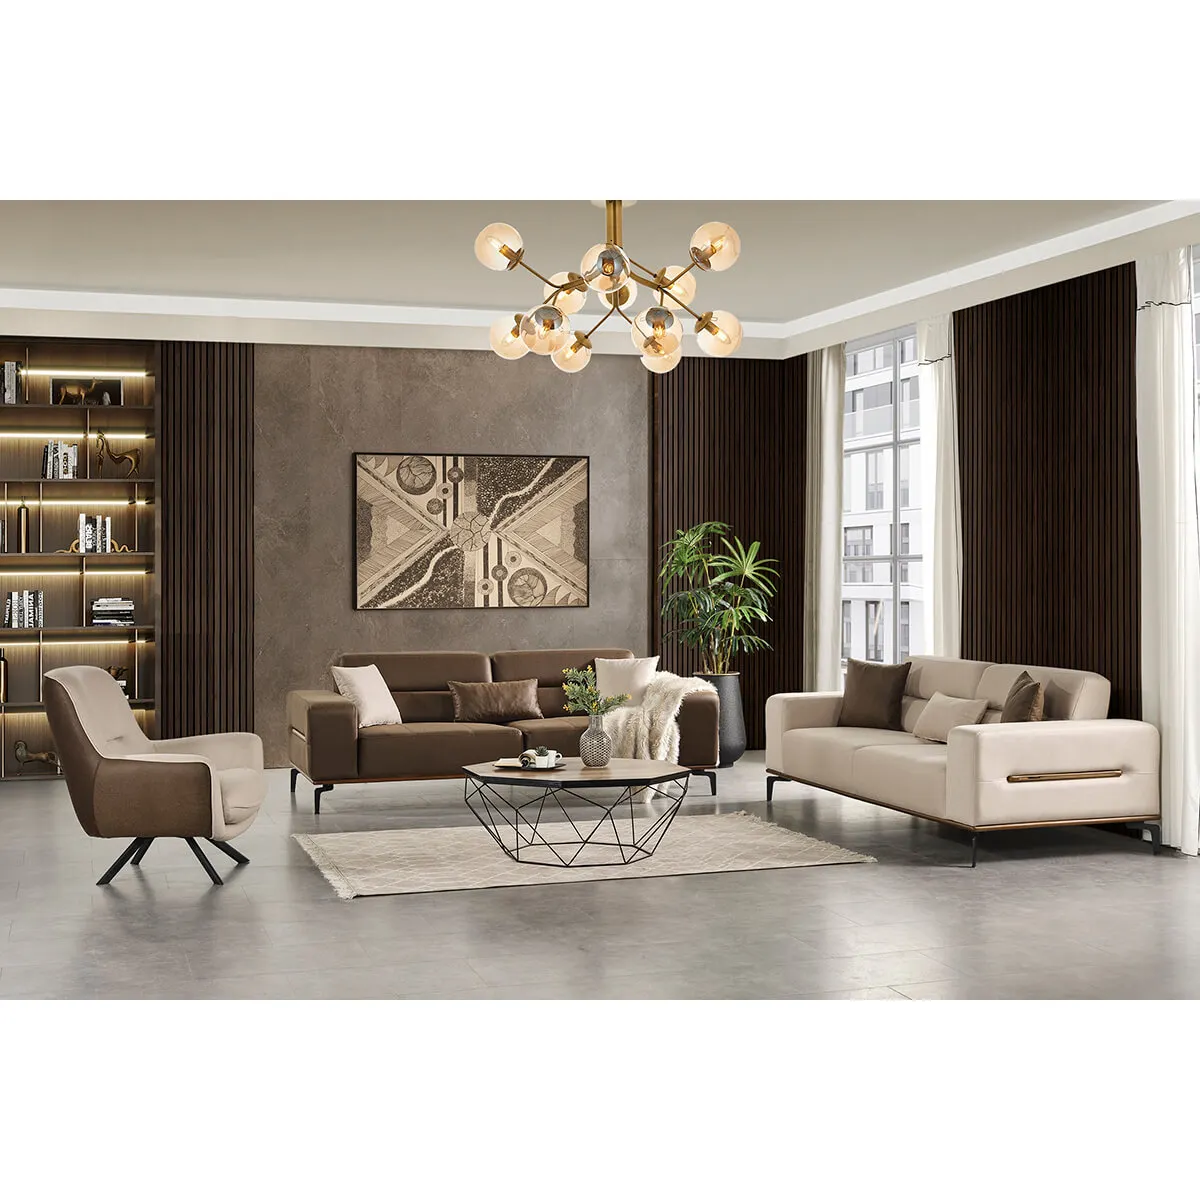 Holz Sofa Sessel Wohn möbel wirtschaft lich Großhandel Couch Samt hygienischen Sitz Set Stil Stoff Packraum (ider Miray)